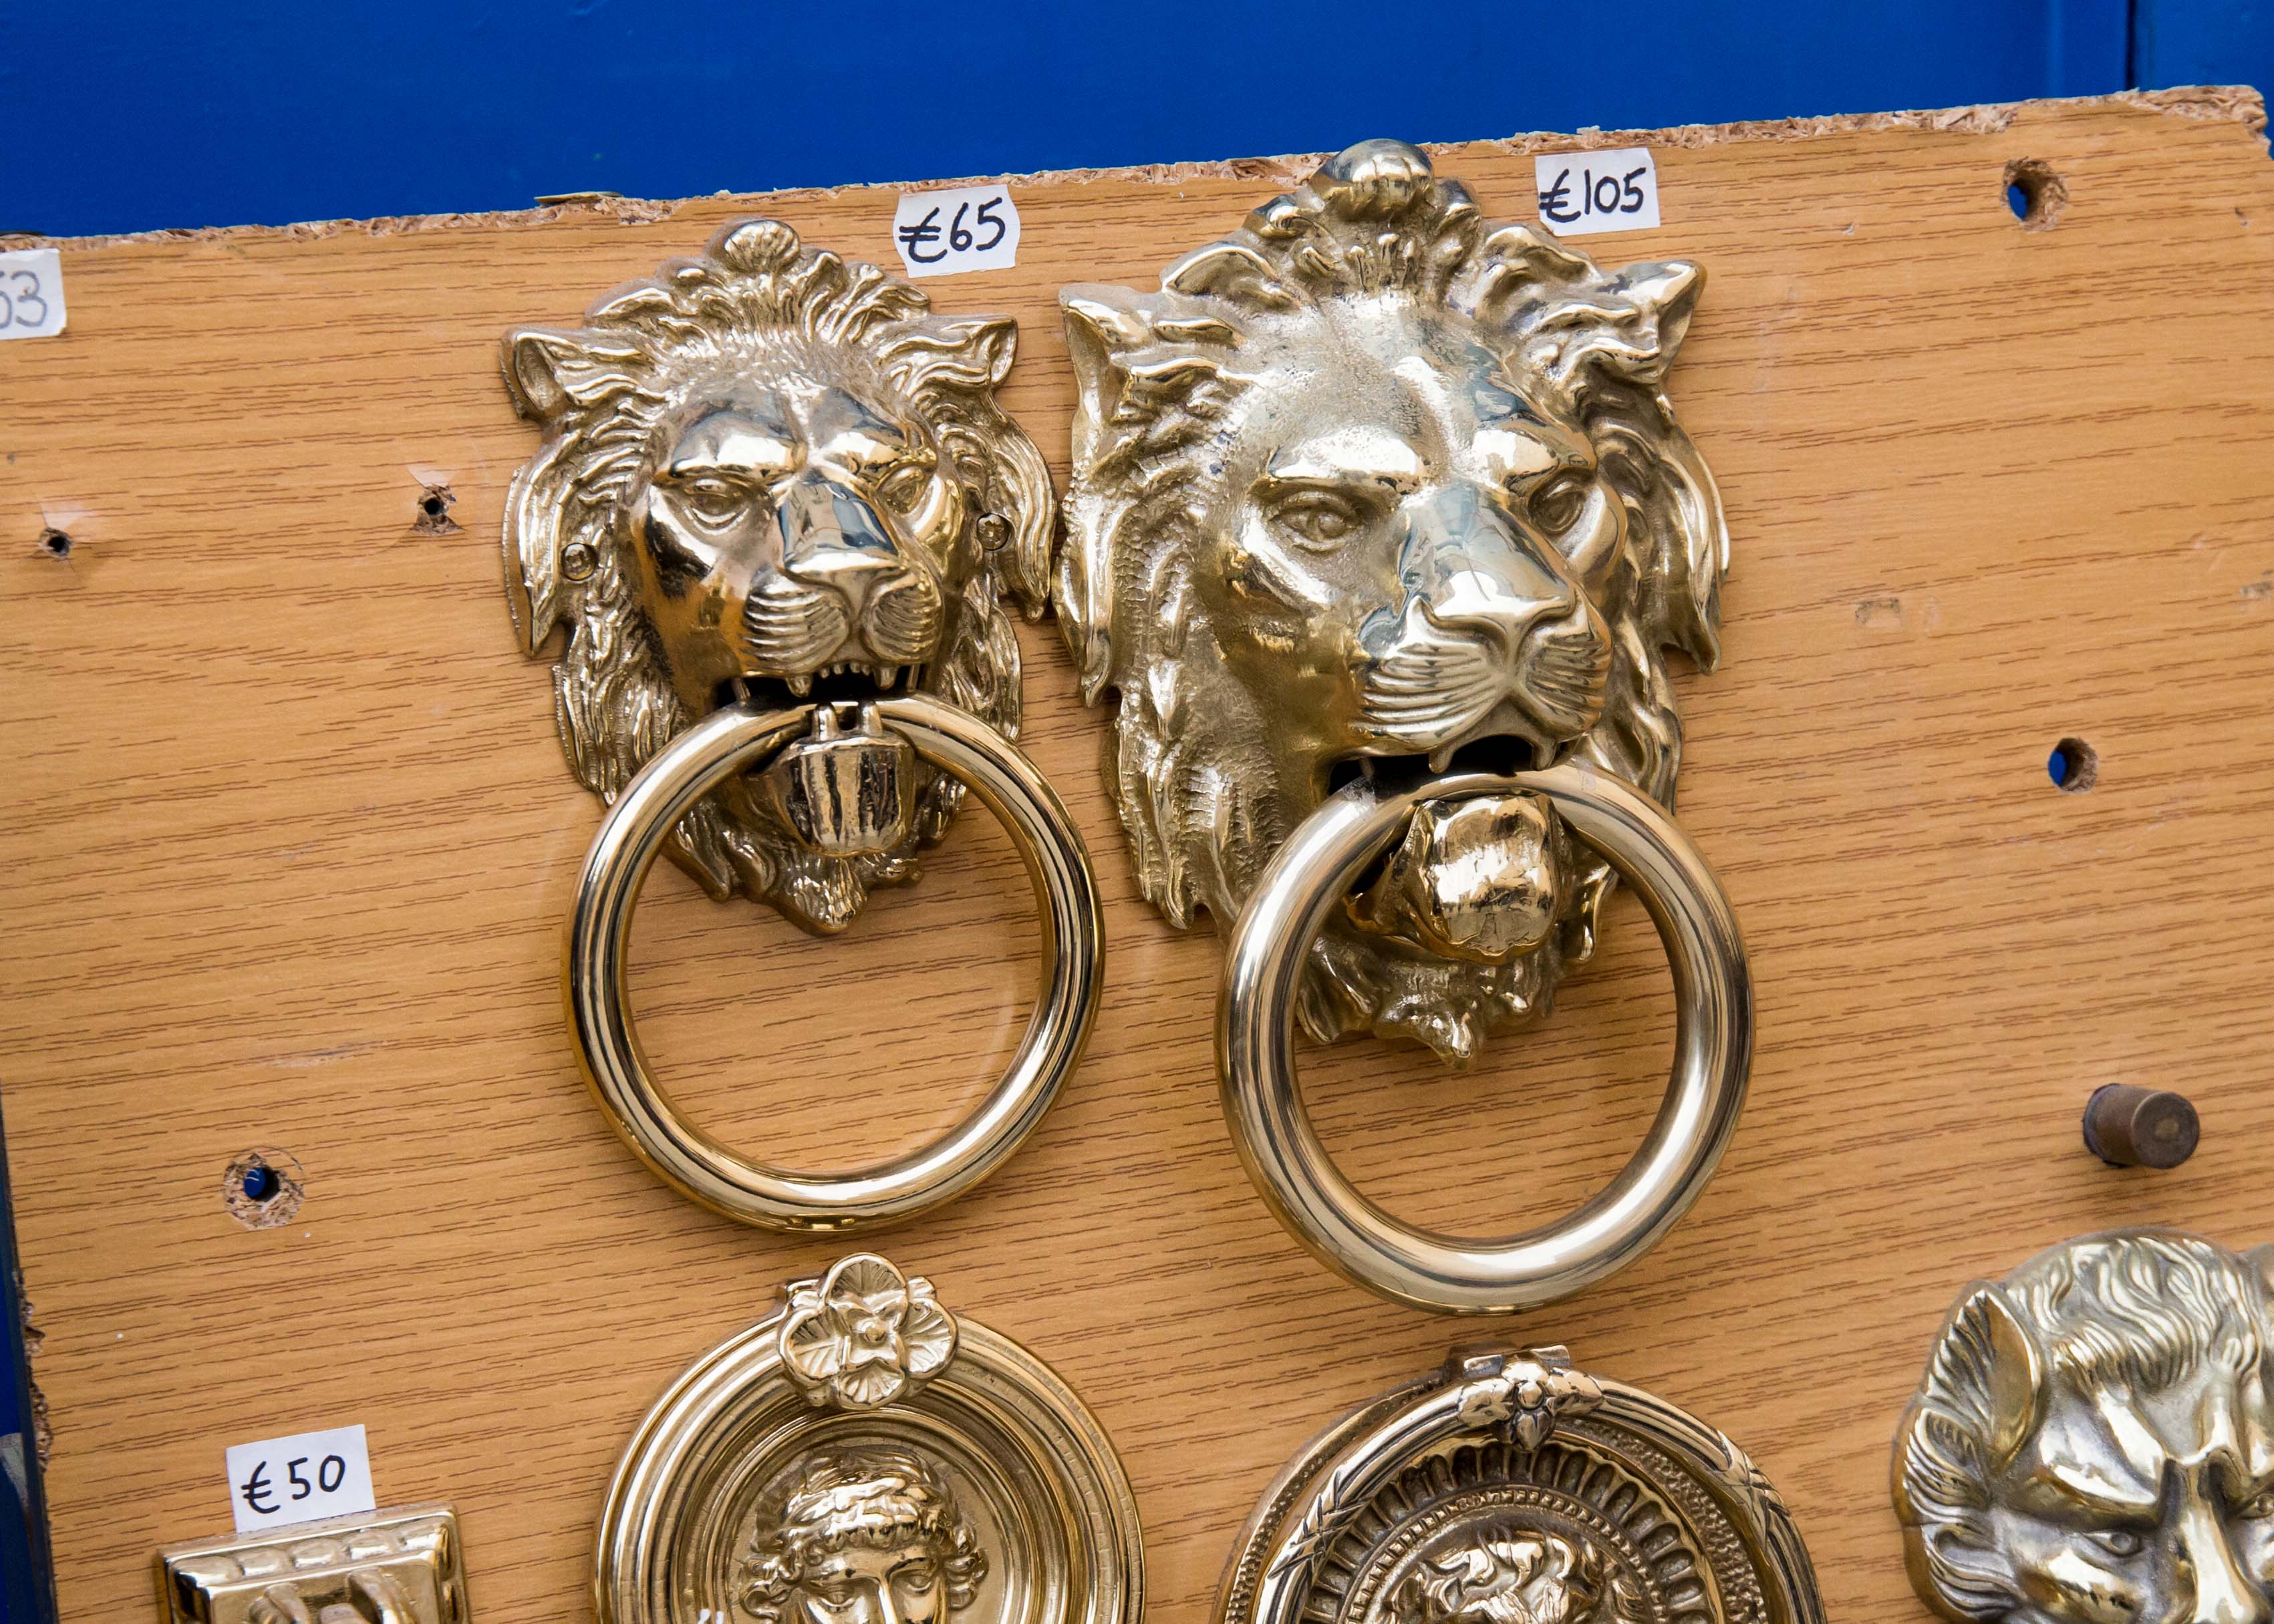 Malta souvenirs: Doorknob